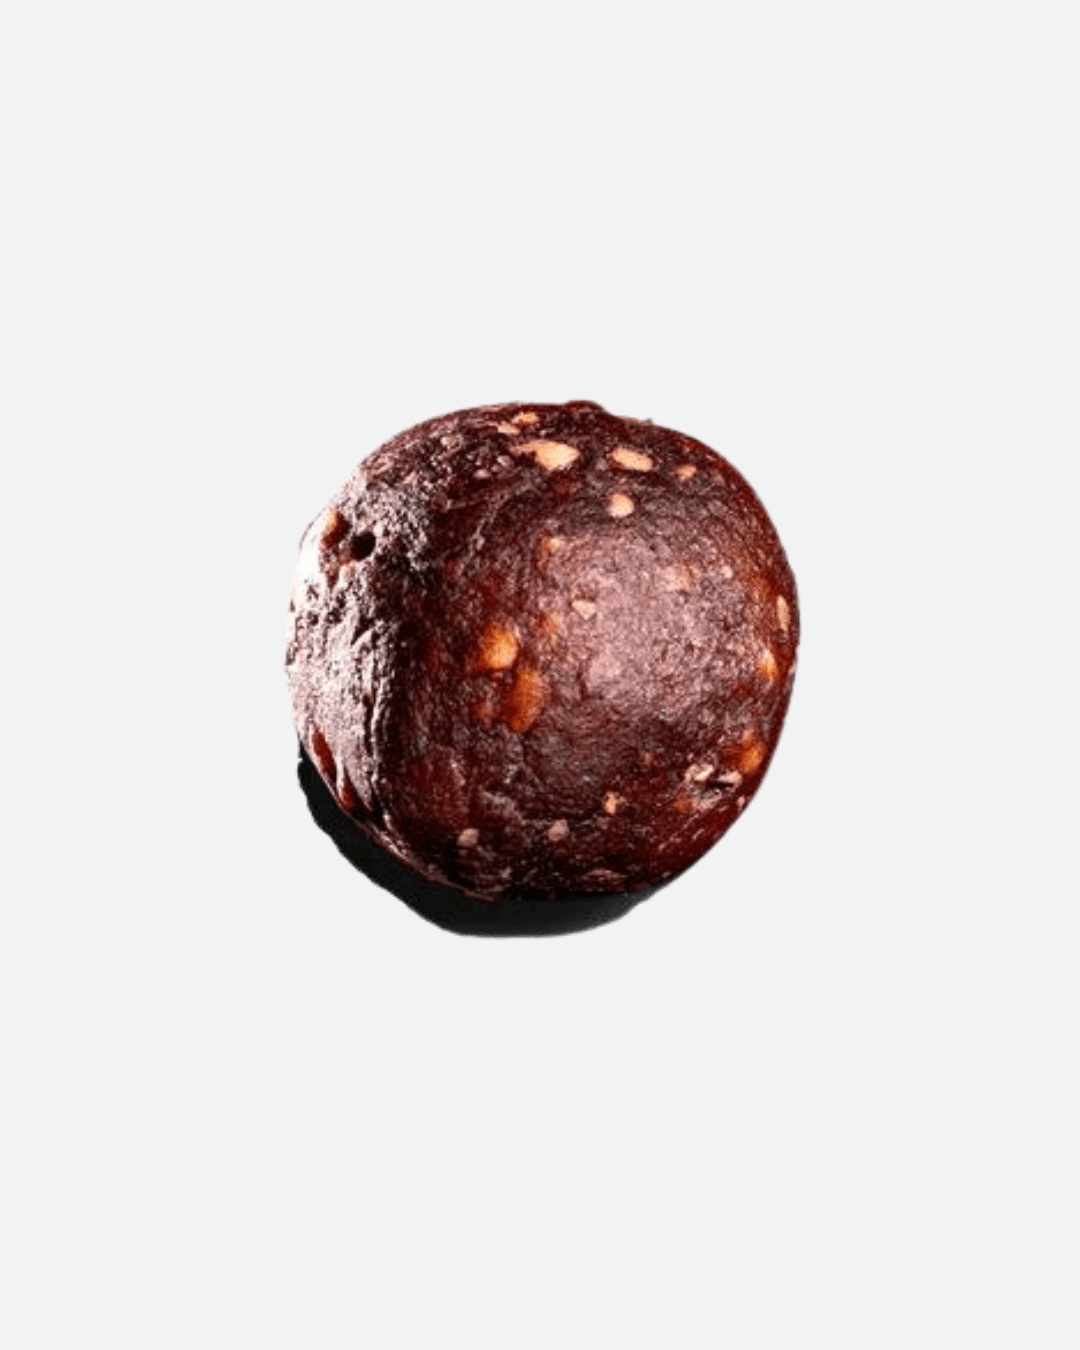 Cacao Hazelnut Energy Balls, 60g